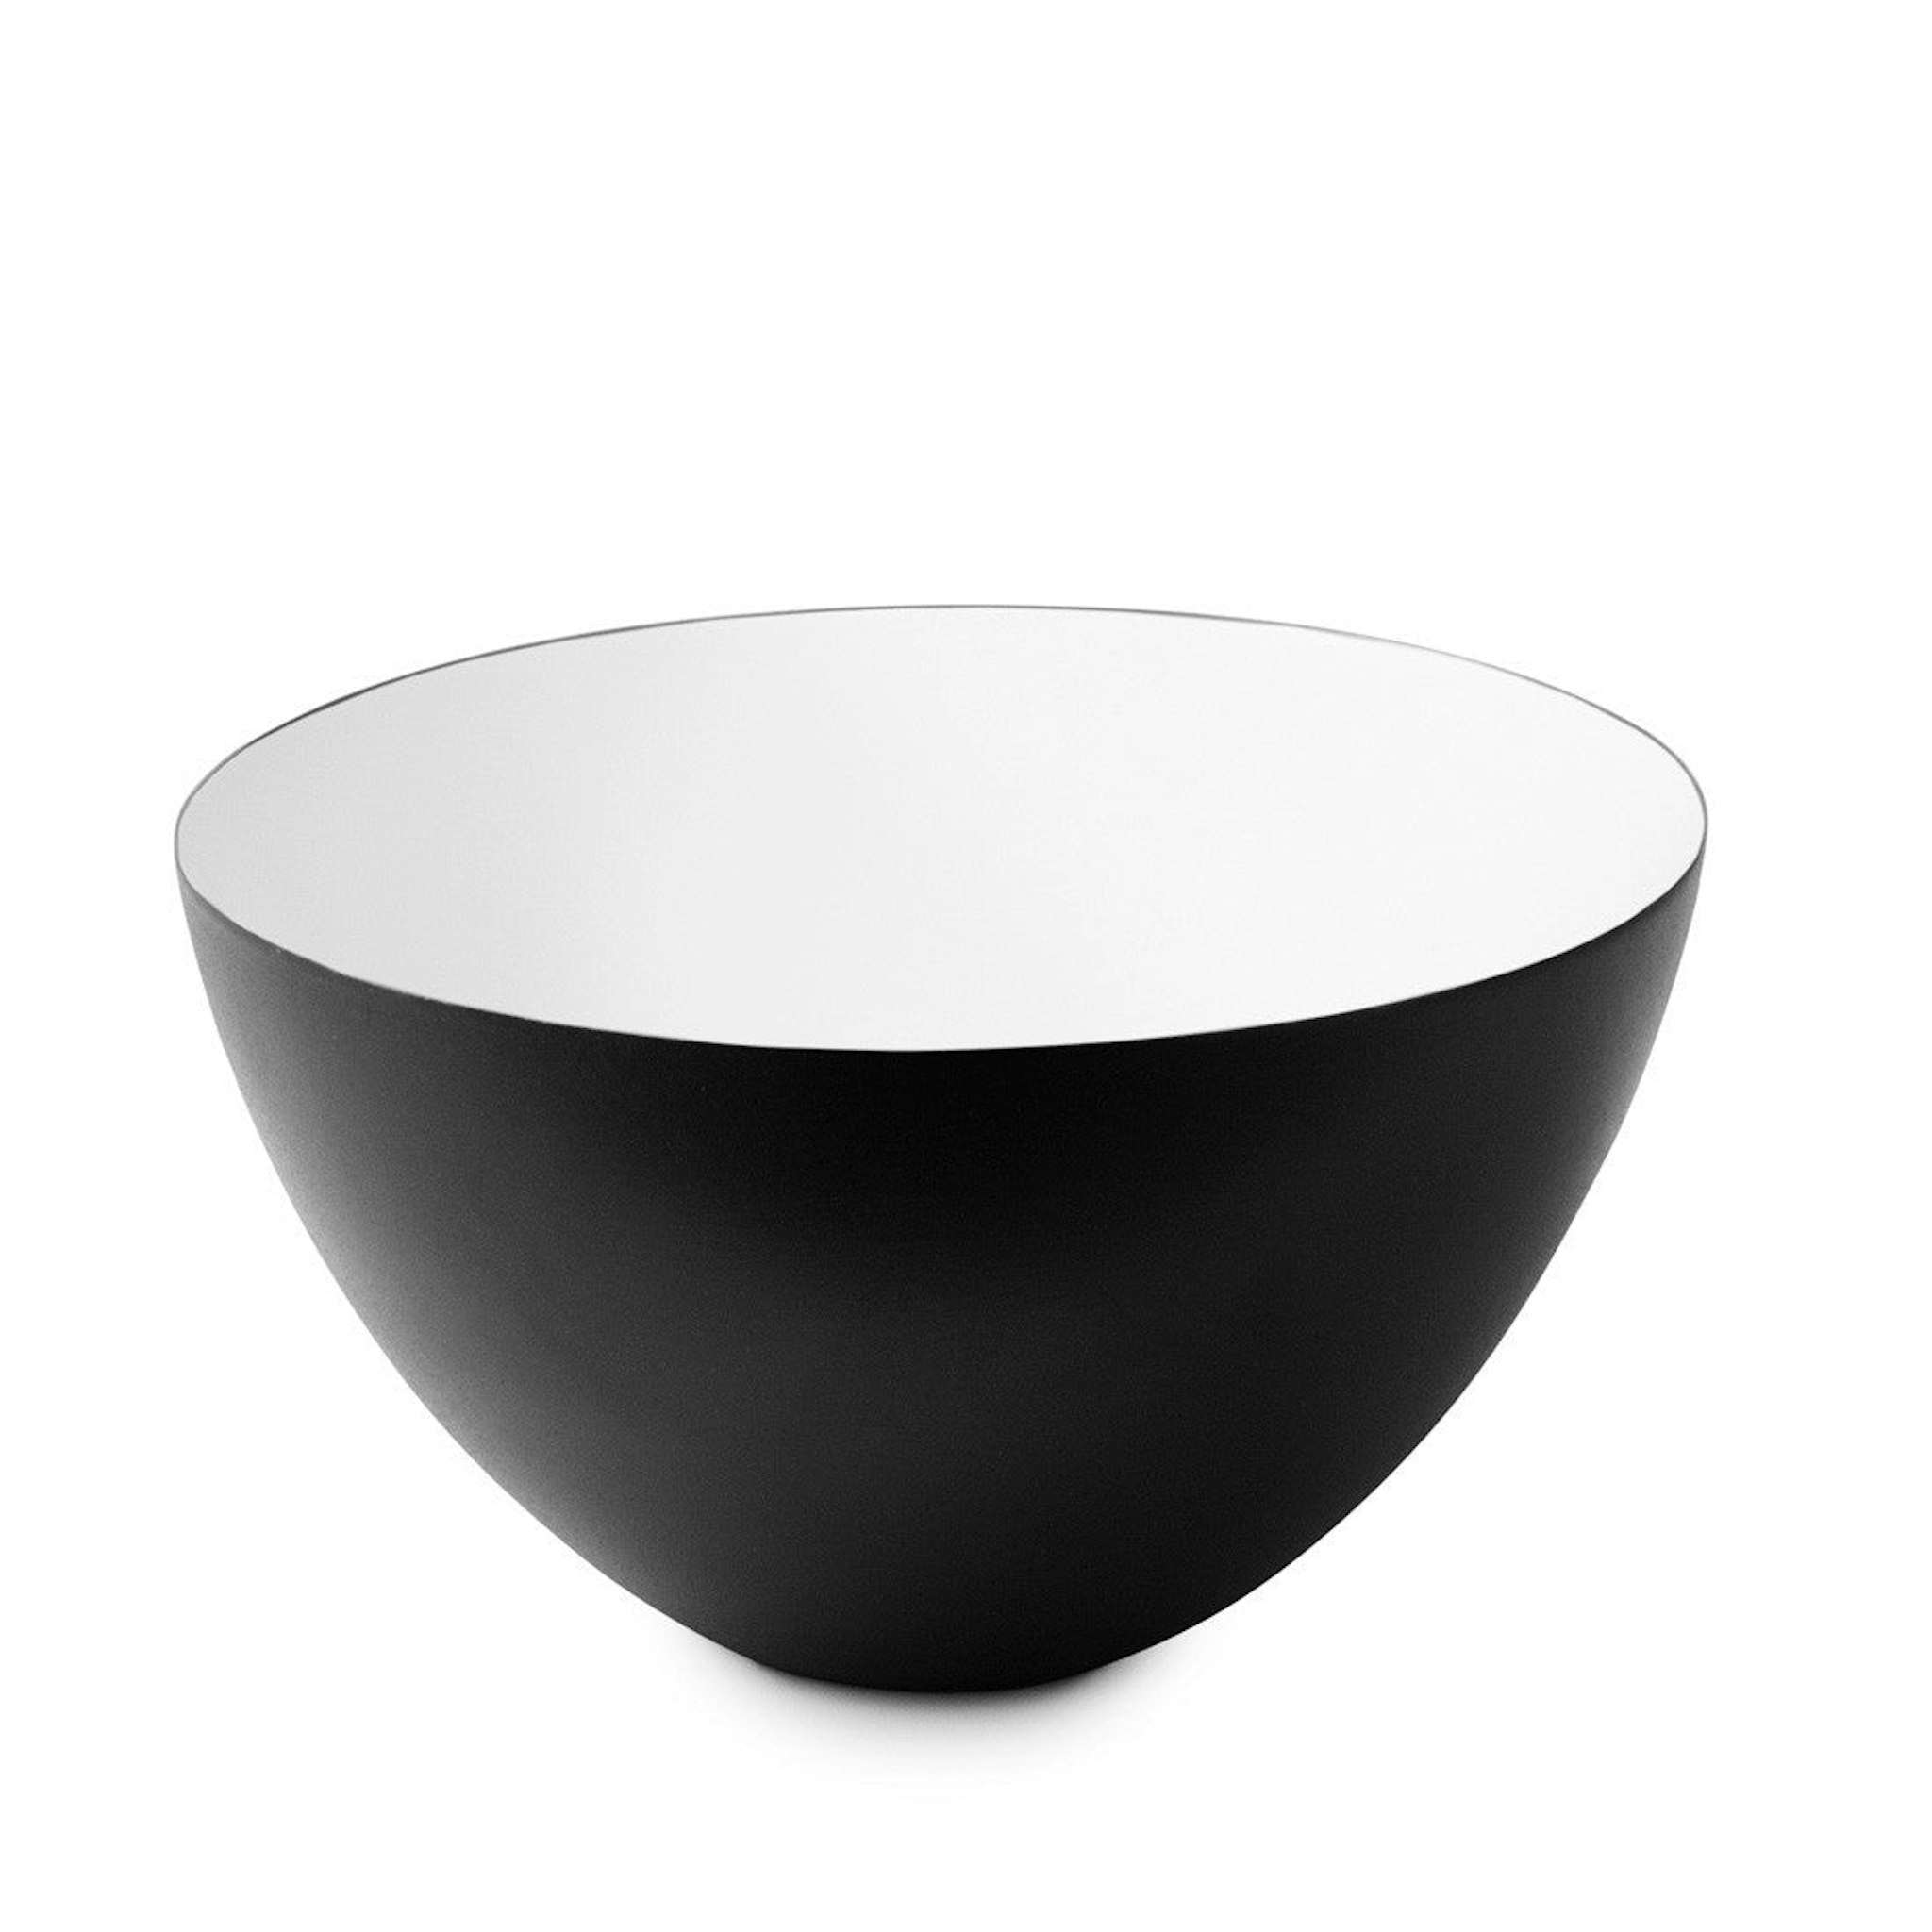 Krenit Bowl Tall Ø25cm by Normann Copenhagen